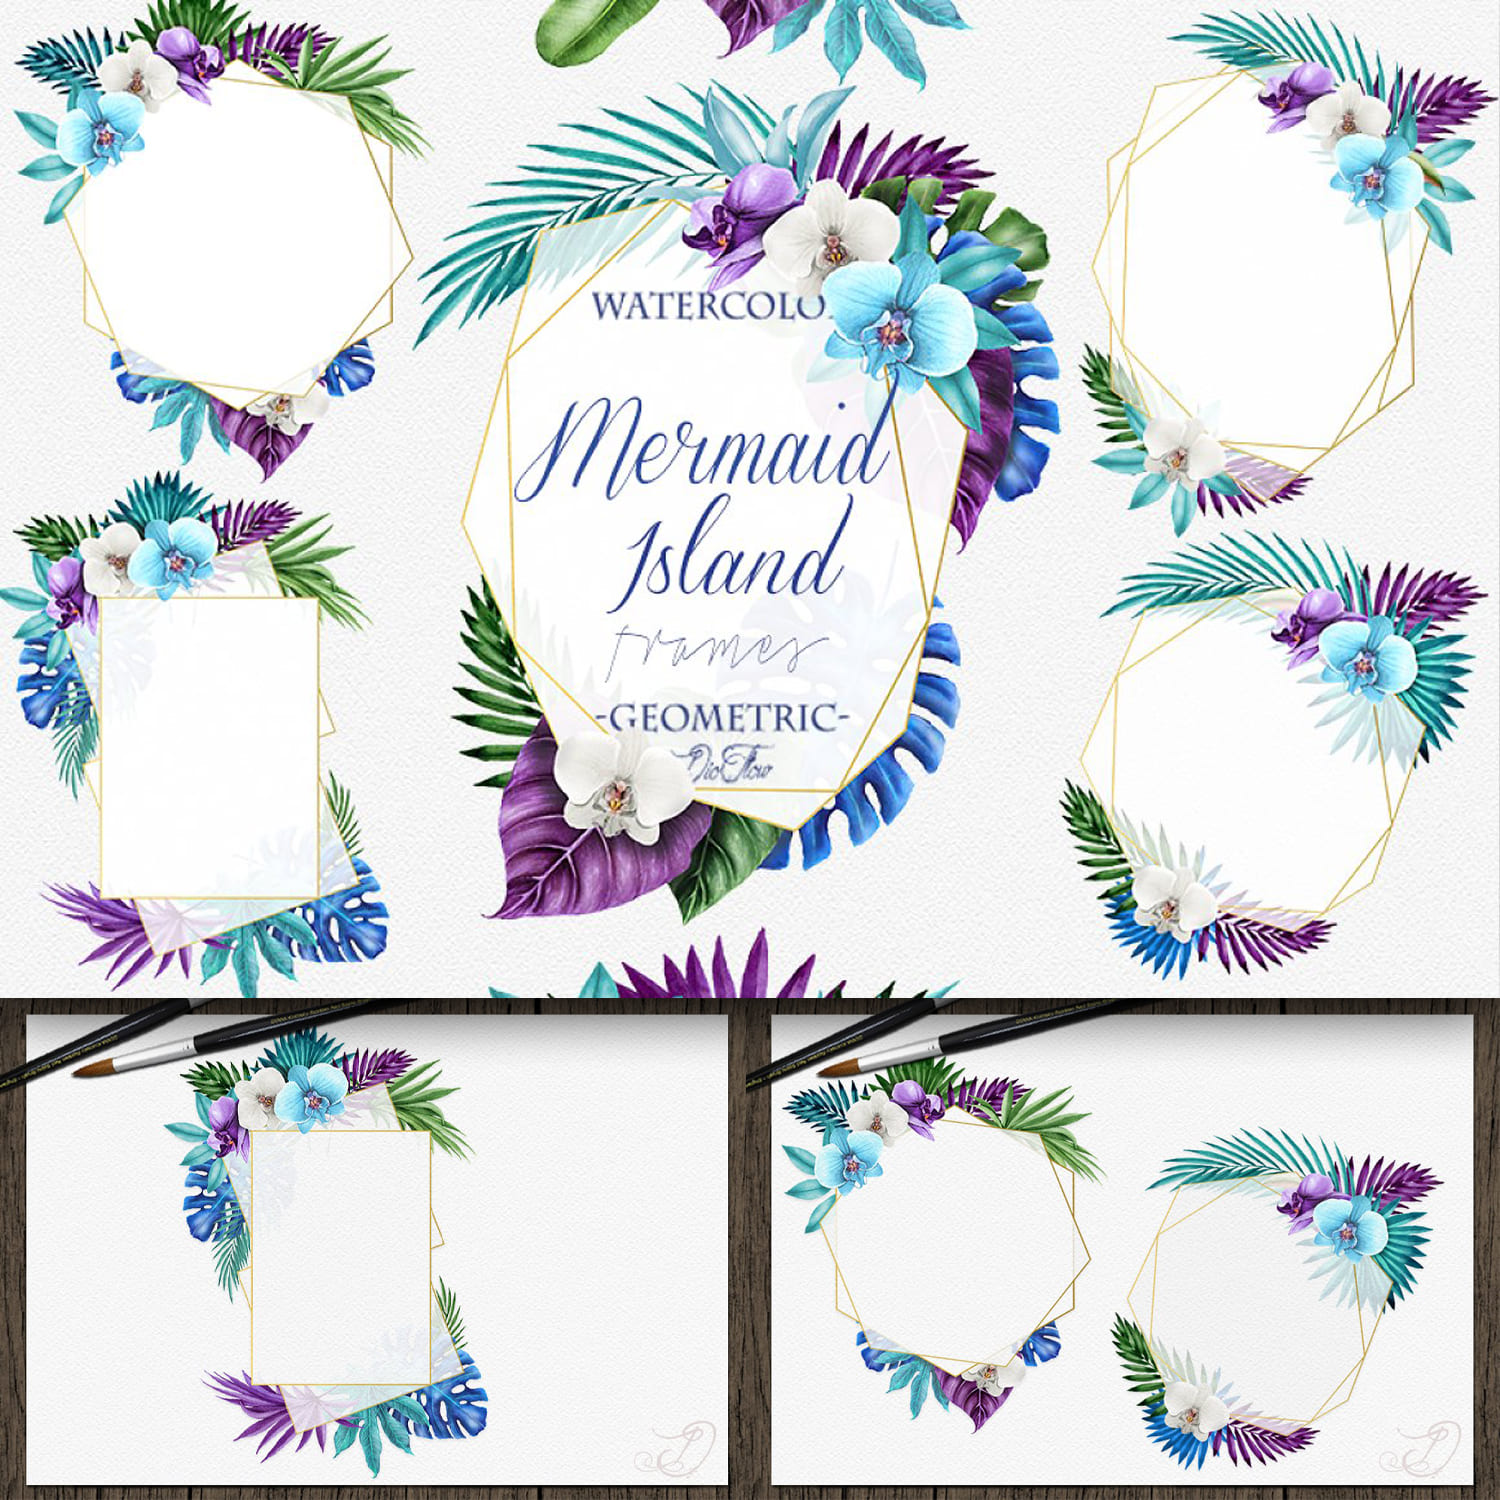 Mermaid Island Frames Clip Art cover.